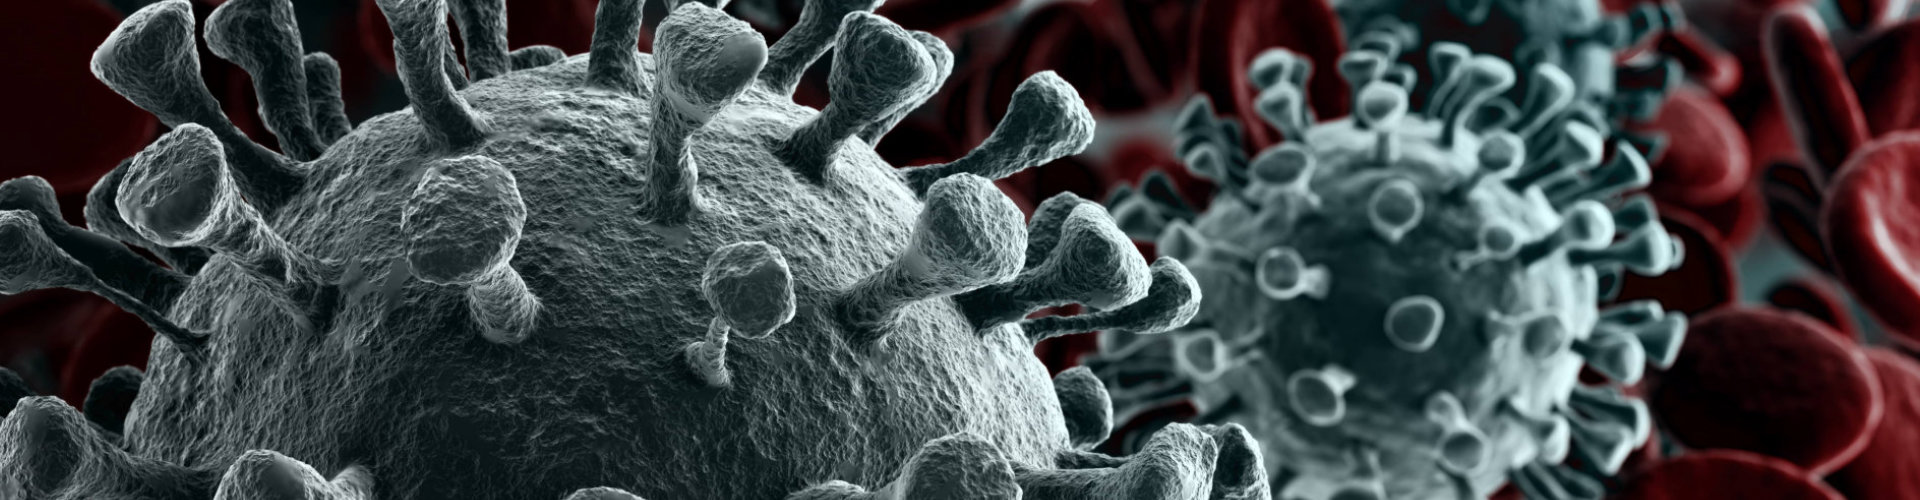 2019-nCov novel coronavirus concept resposible for asian flu outbreak